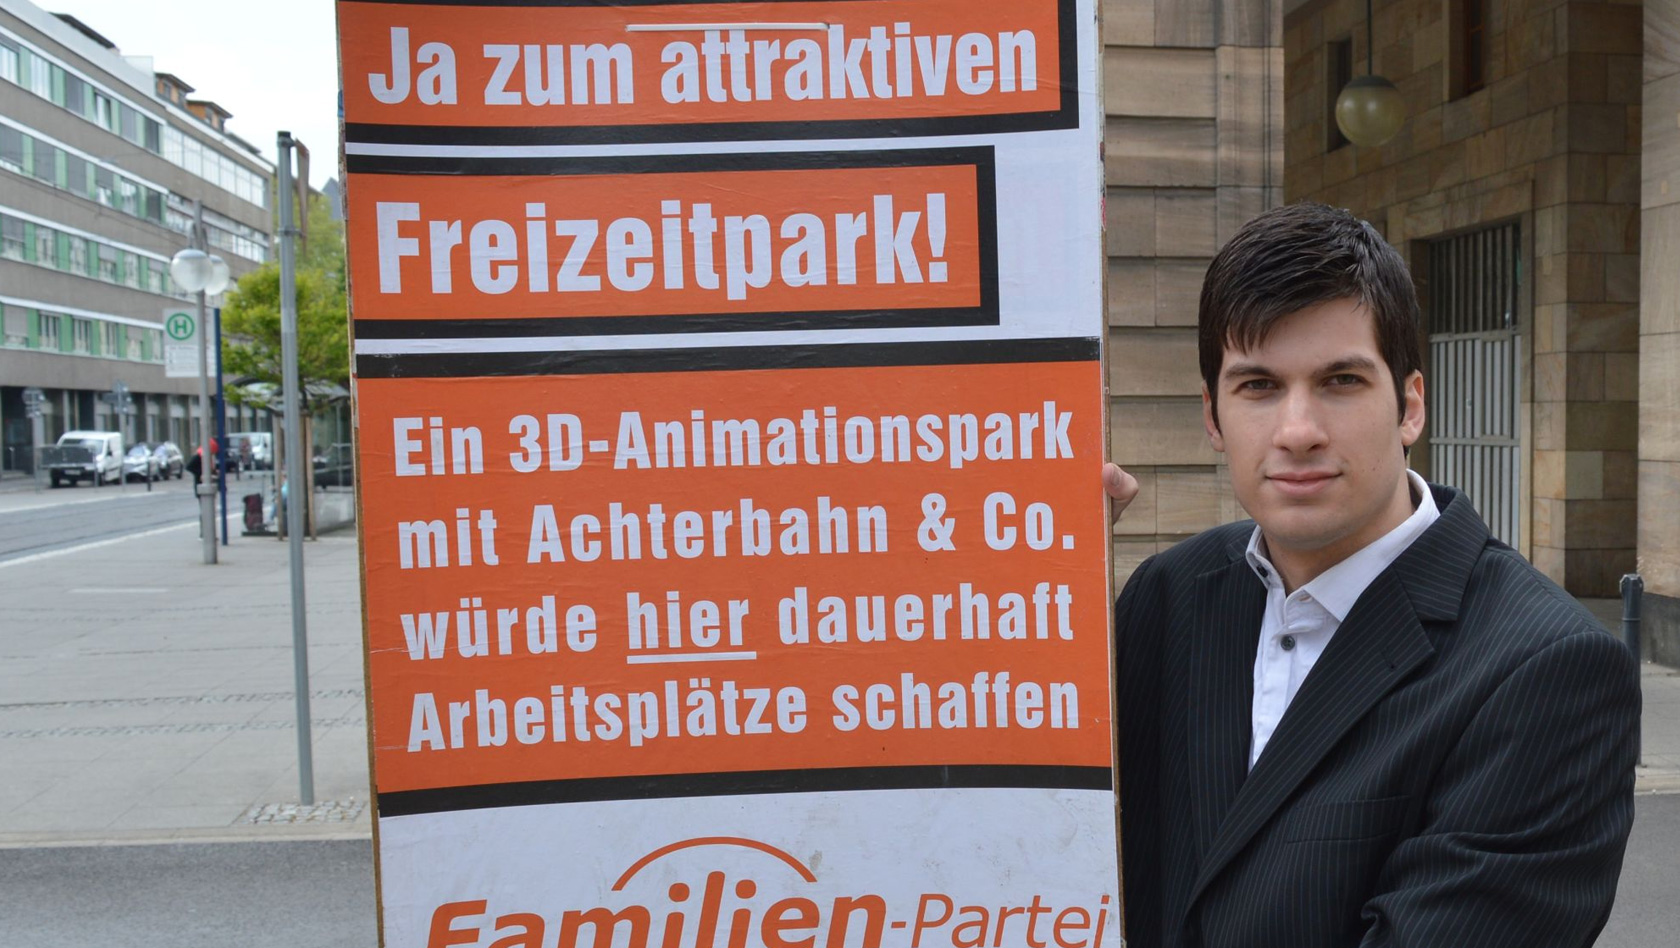 Freizeitpark Mannheim Kampagne Plakat 2017